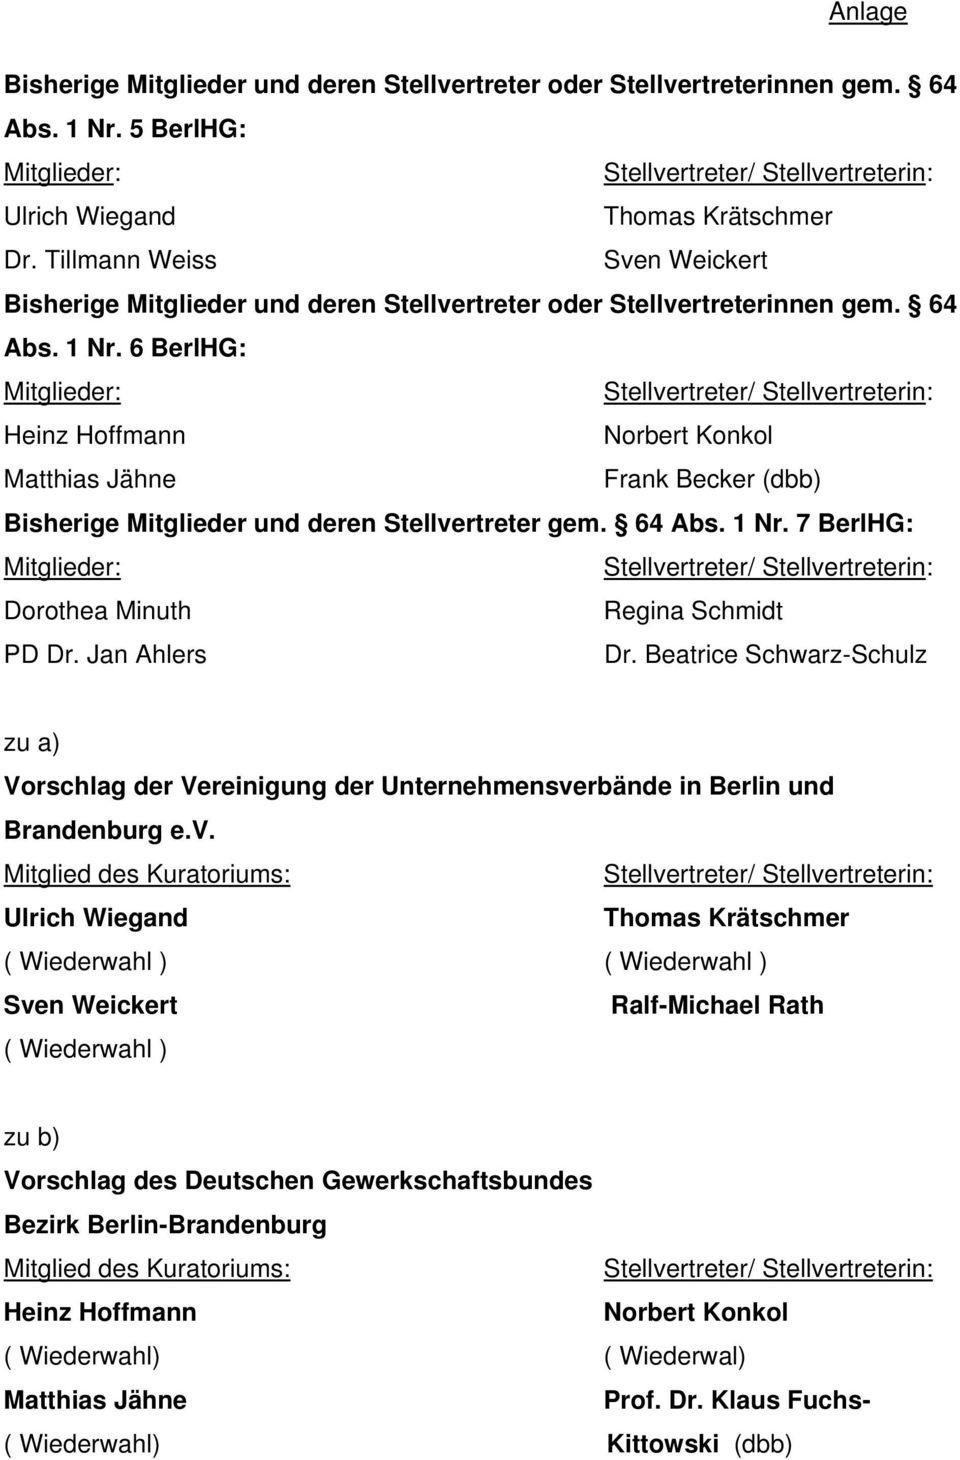 6 BerlHG: Mitglieder: Heinz Hoffmann Norbert Konkol Matthias Jähne Frank Becker (dbb) Bisherige Mitglieder und deren Stellvertreter gem. 64 Abs. 1 Nr.